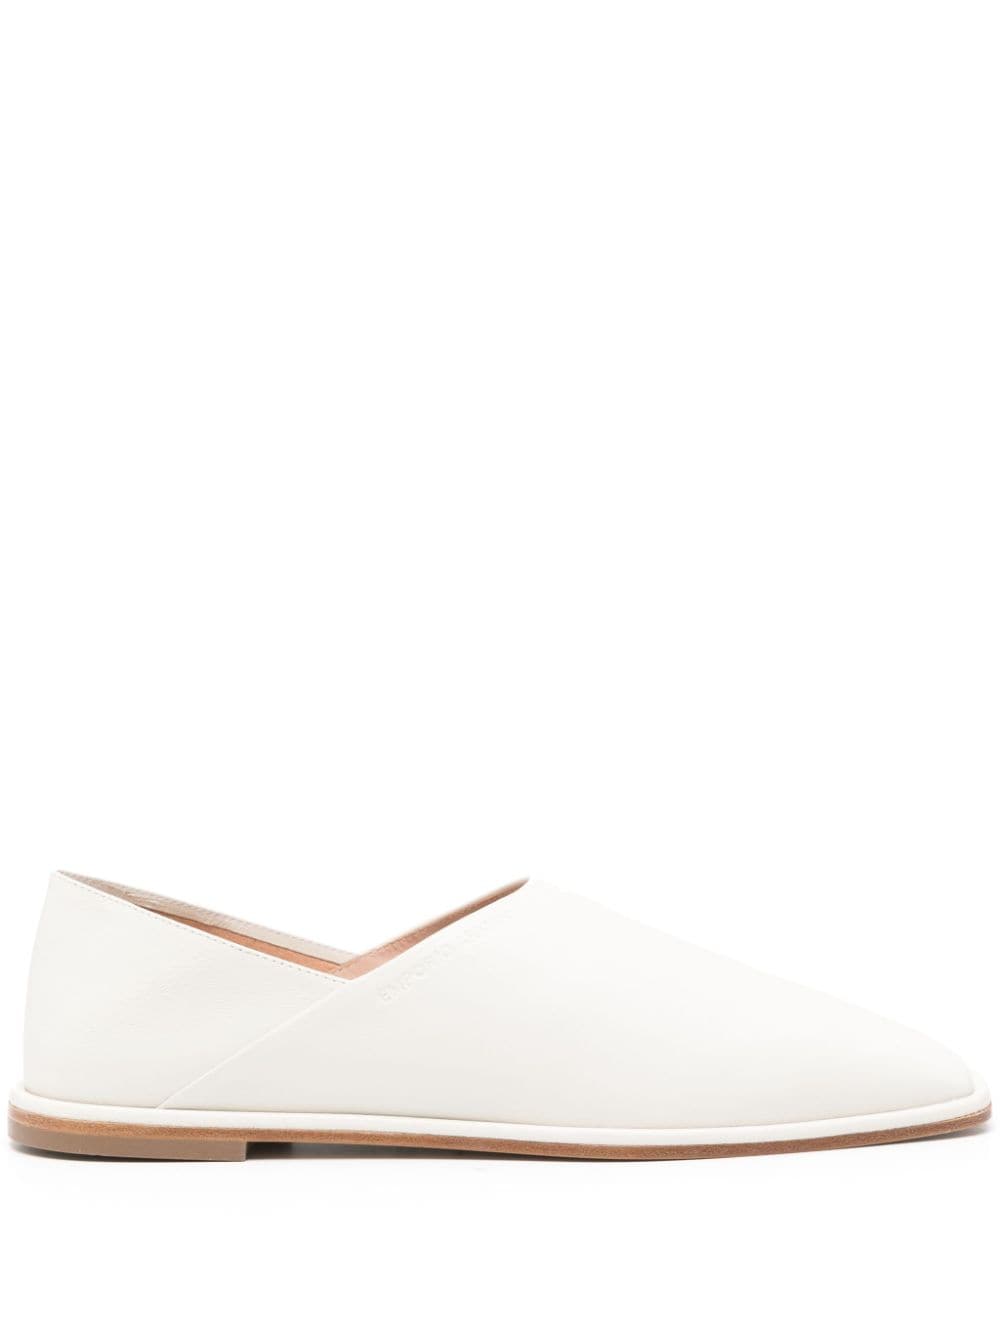 Emporio Armani square-toe leather slippers - White von Emporio Armani